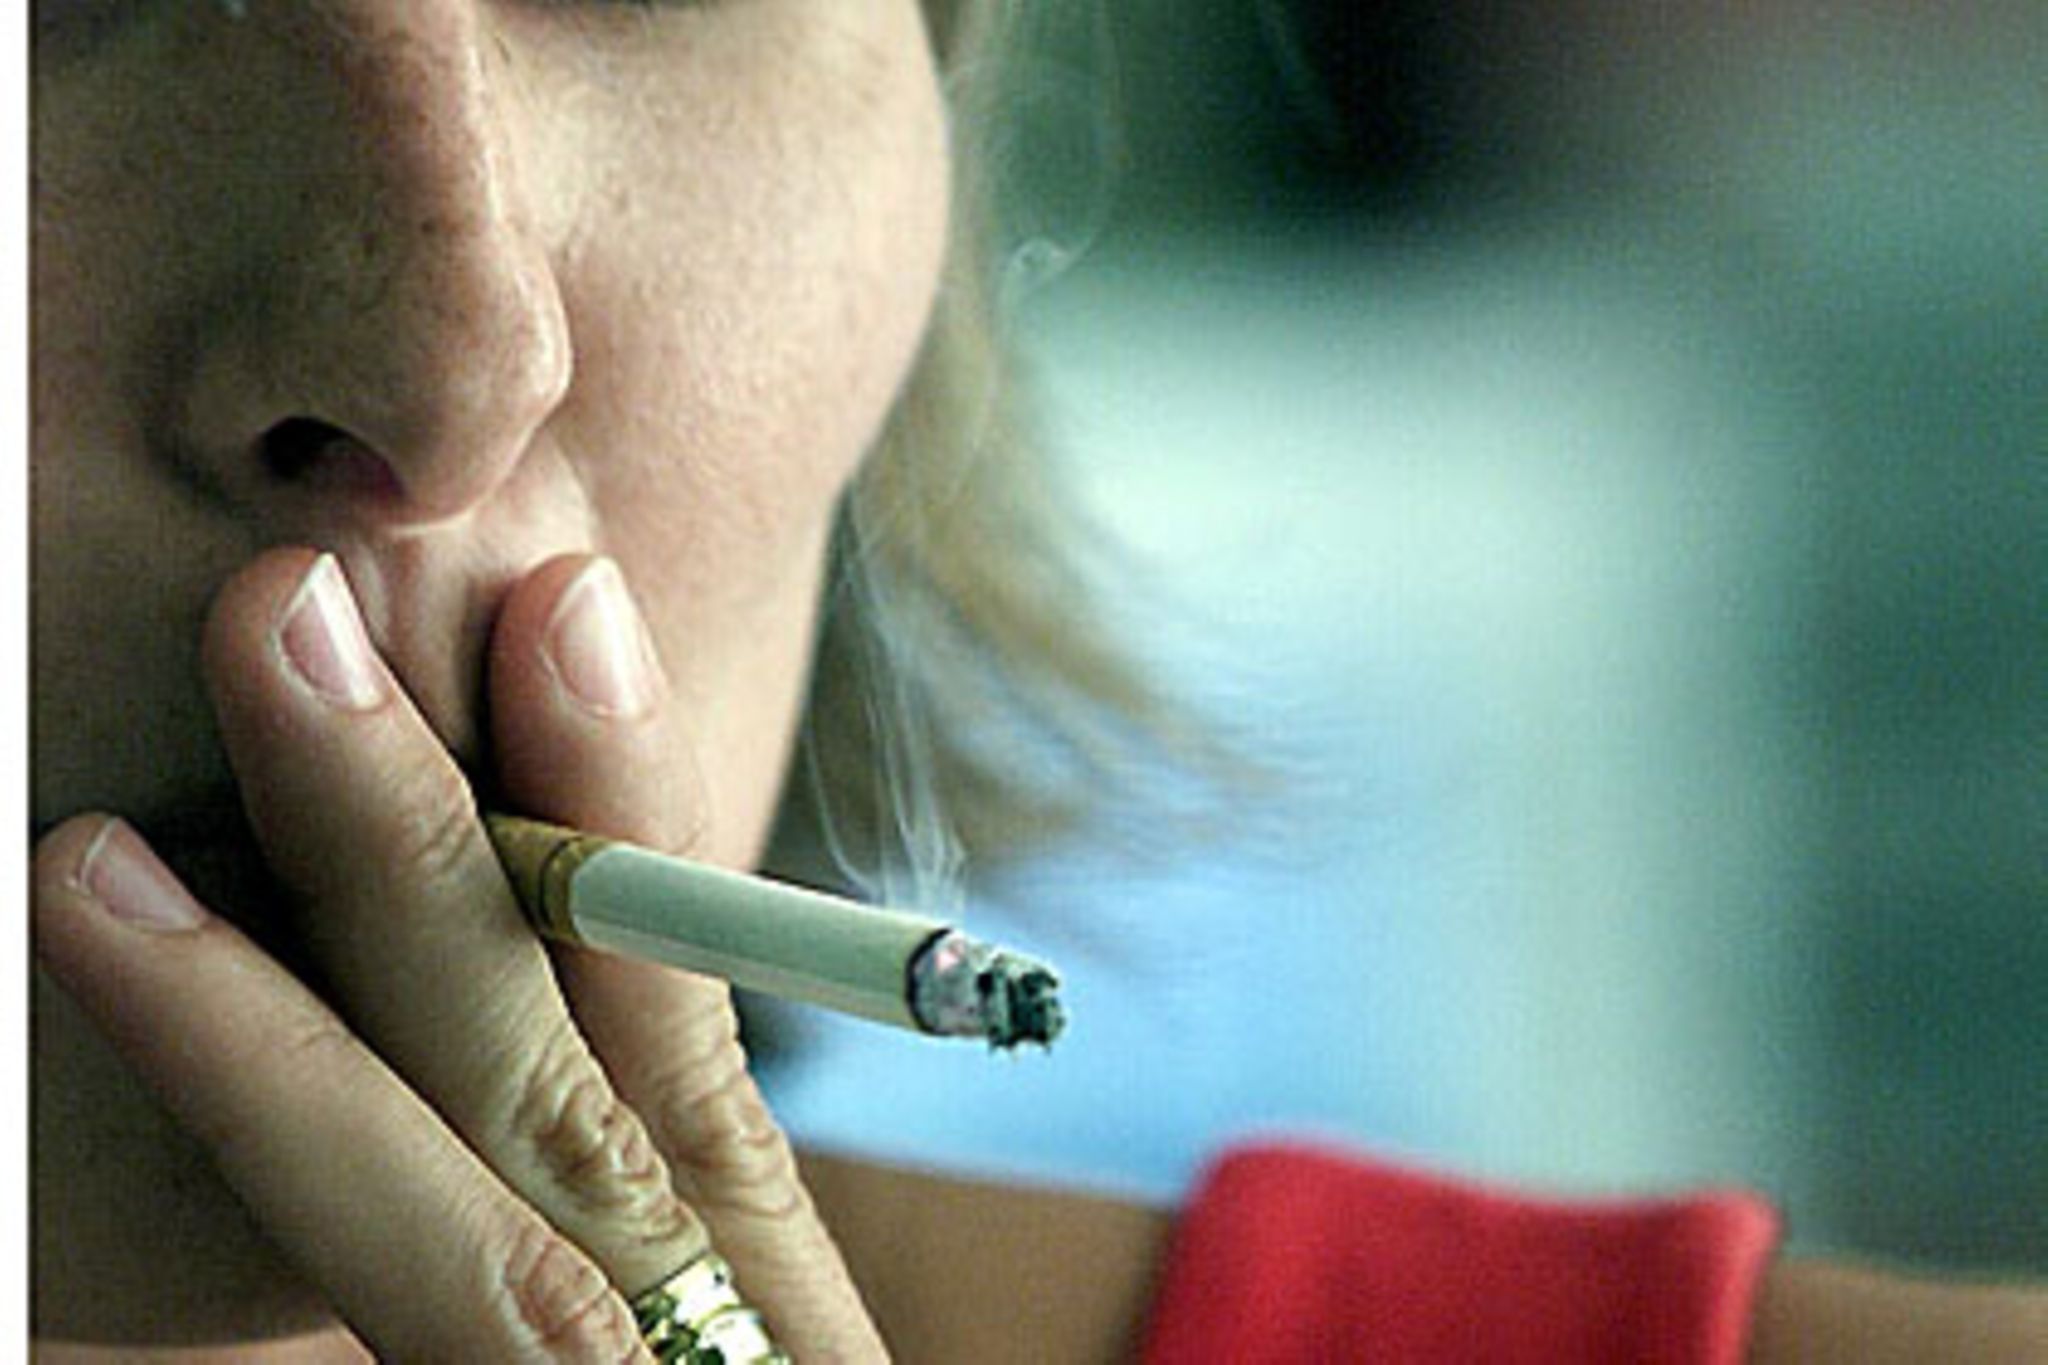 Zusatzstoffe in Zigaretten: Philip Morris soll Studien manipuliert haben